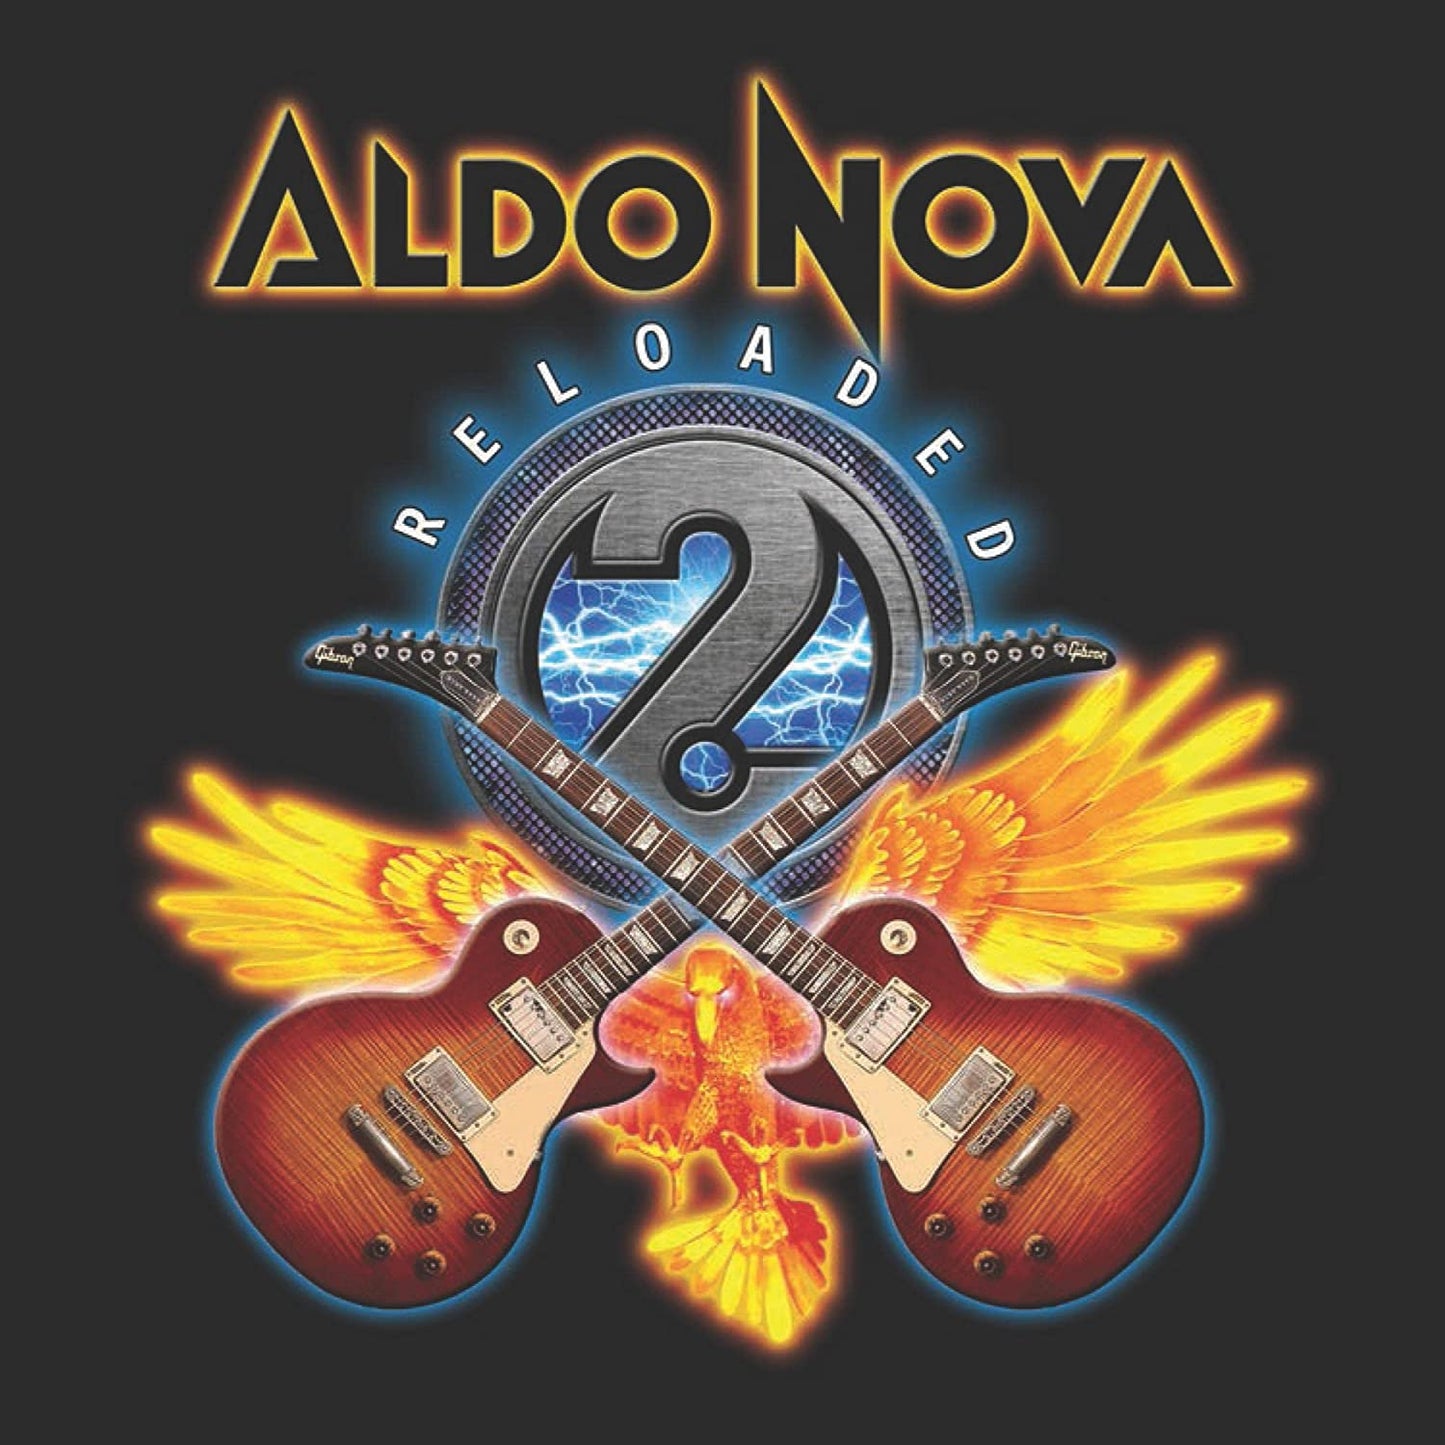 3CD - Aldo Nova - Reloaded